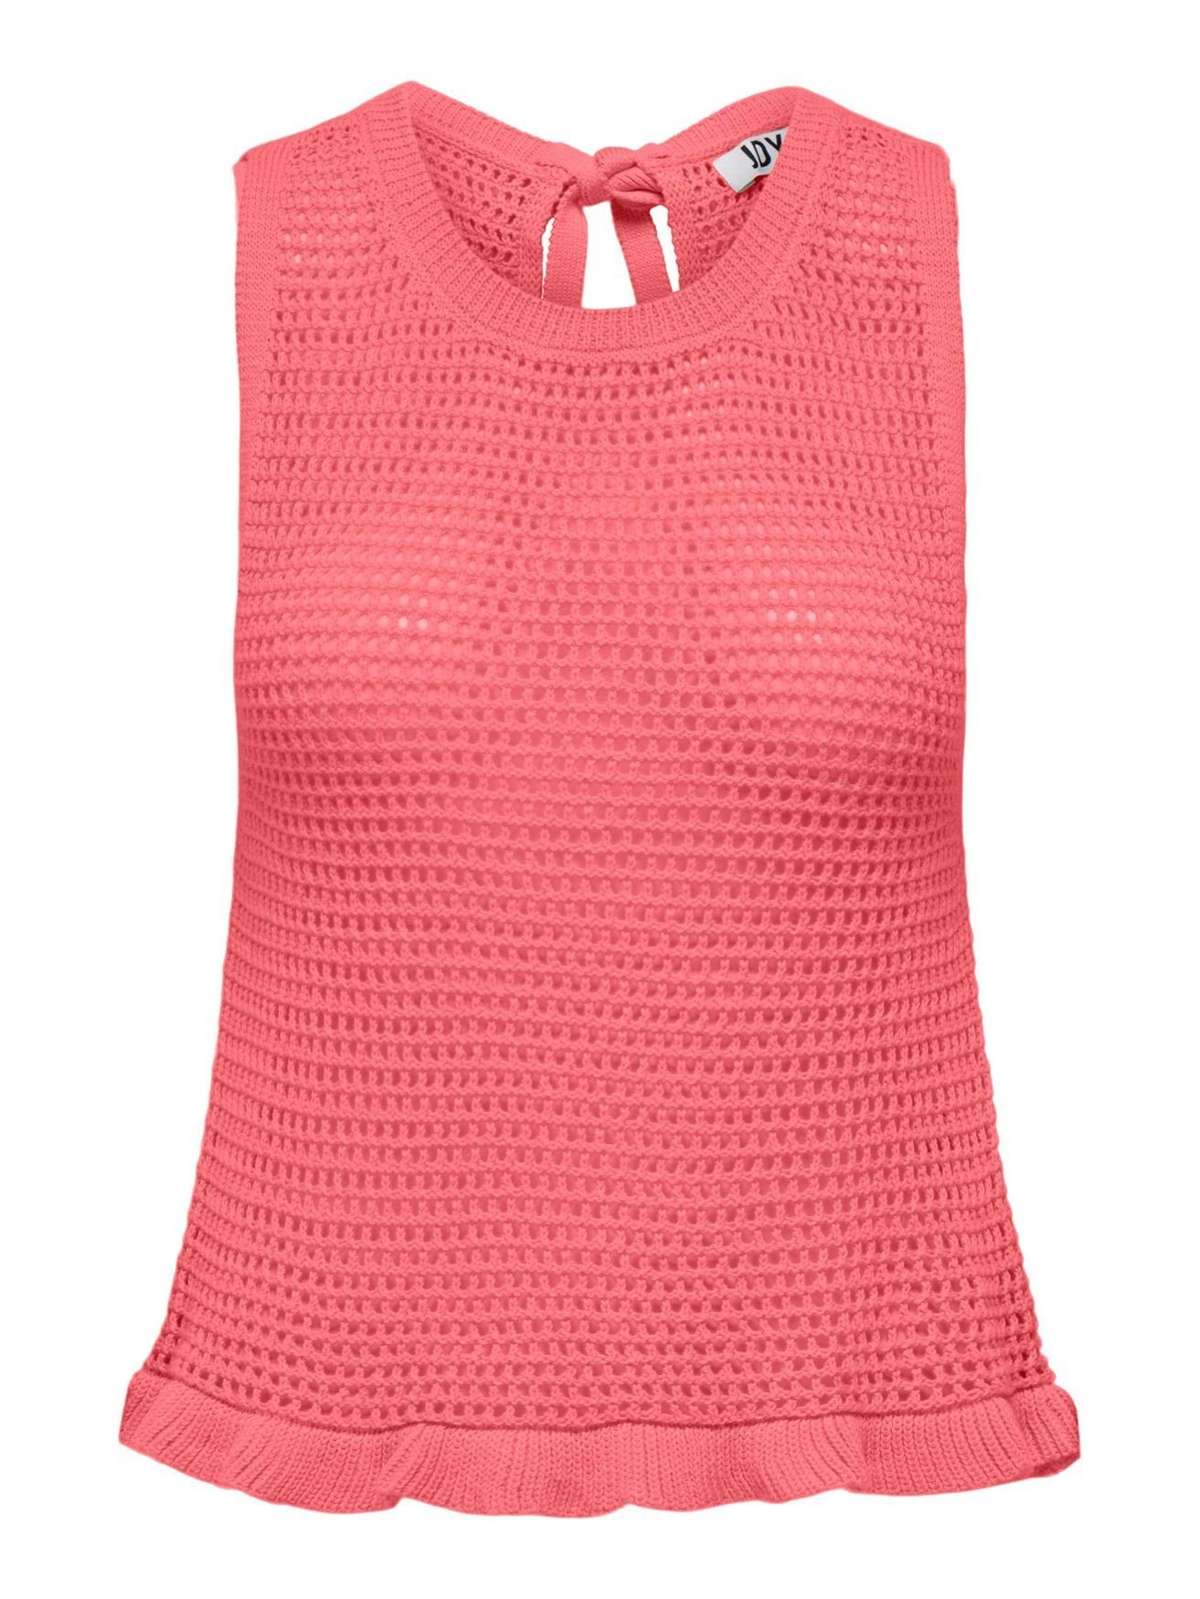 Топ-рубашка крупной вязки JDYTIKKA 4968 розового цвета-2